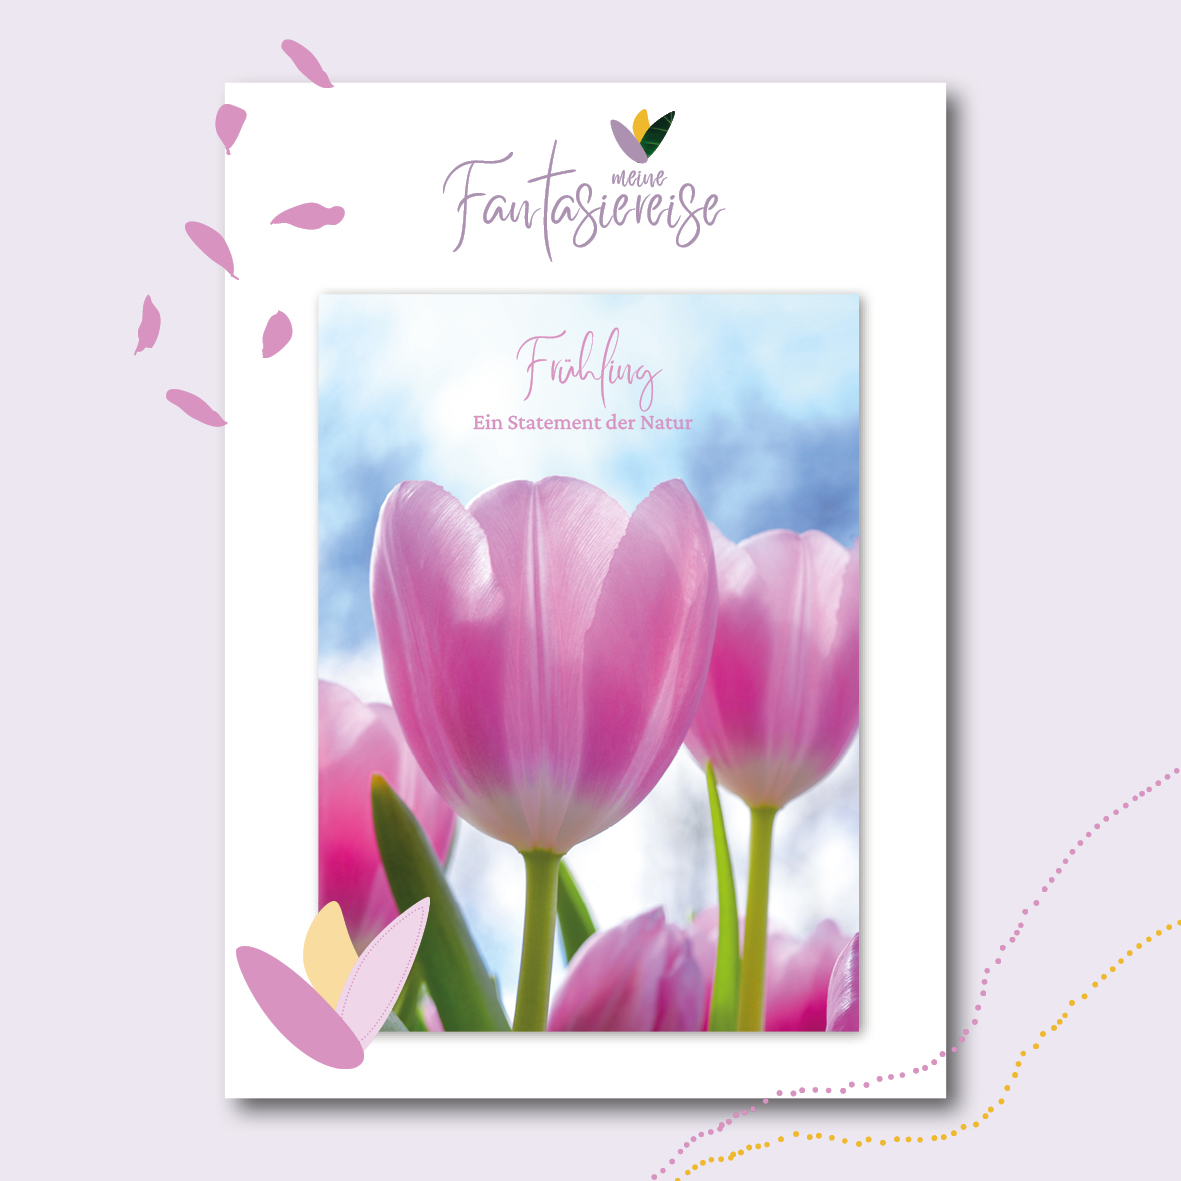 Das Cover für die entspannende Fantasiereise "Frühling - Ein Statement der Natur" zeigt rosafarbene Tulpen vor blauem Himmel.